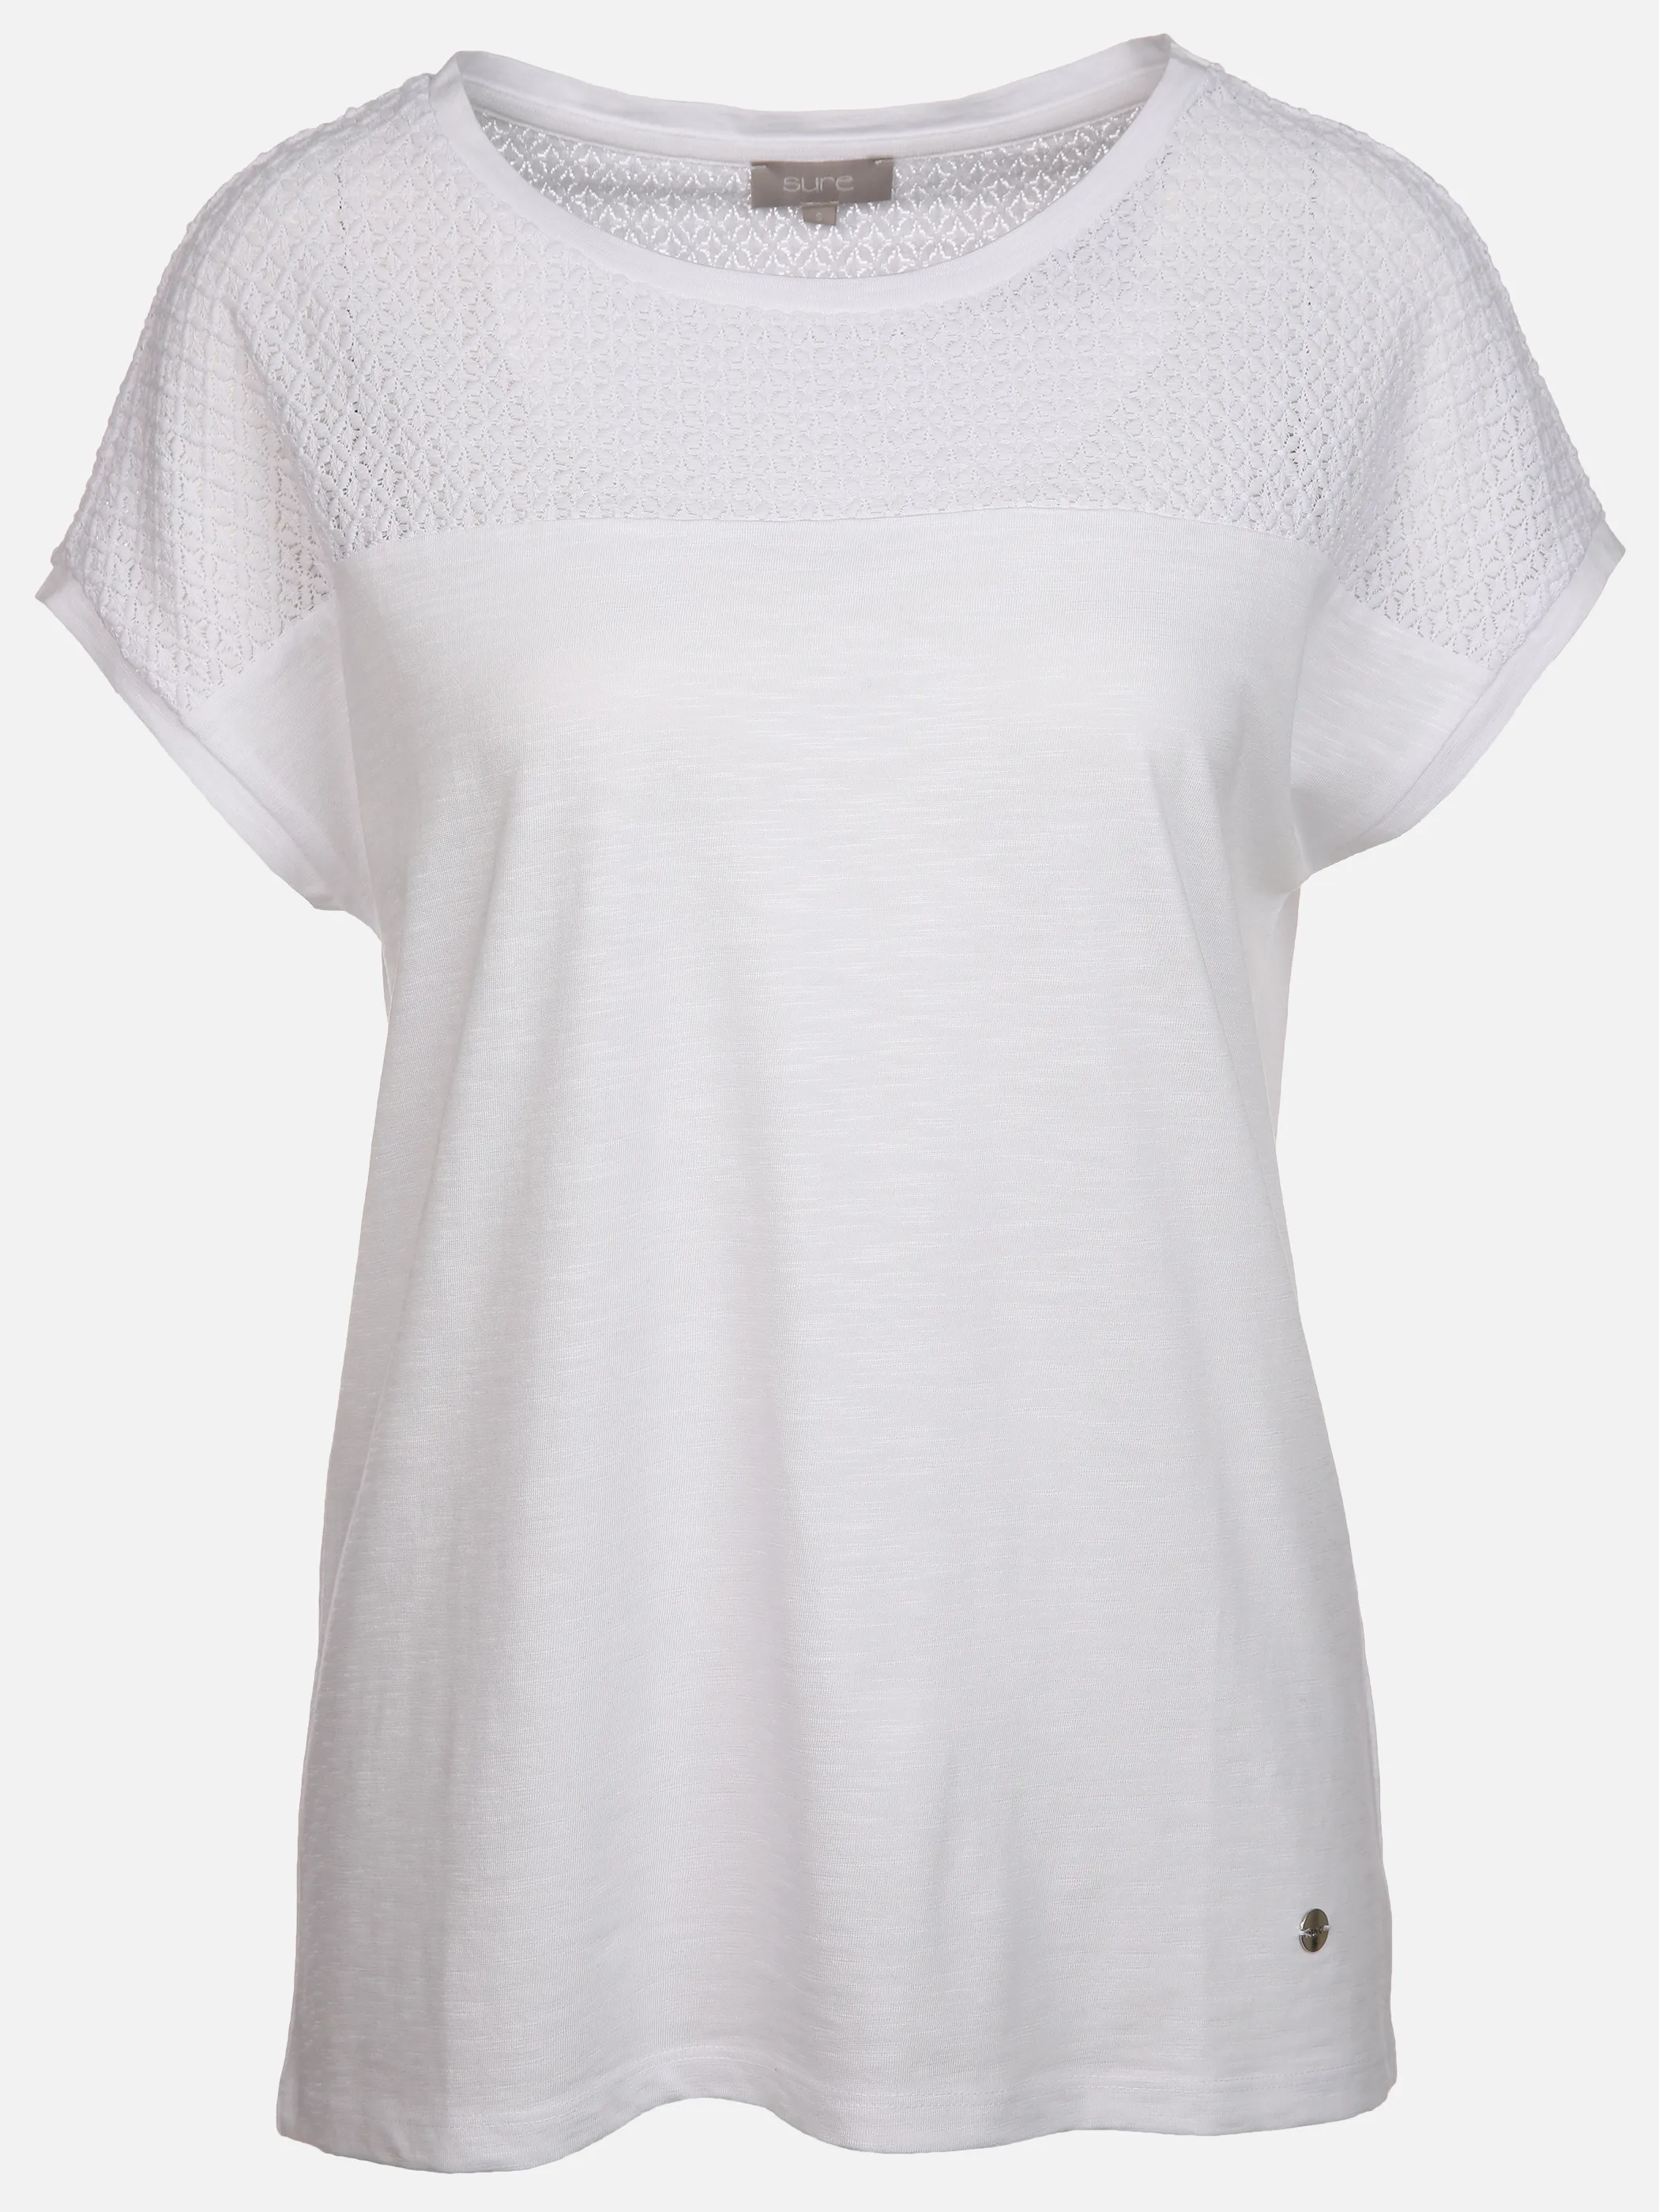 Sure Da-T-Shirt m. Materialmix Weiß 889907 WEIß 1